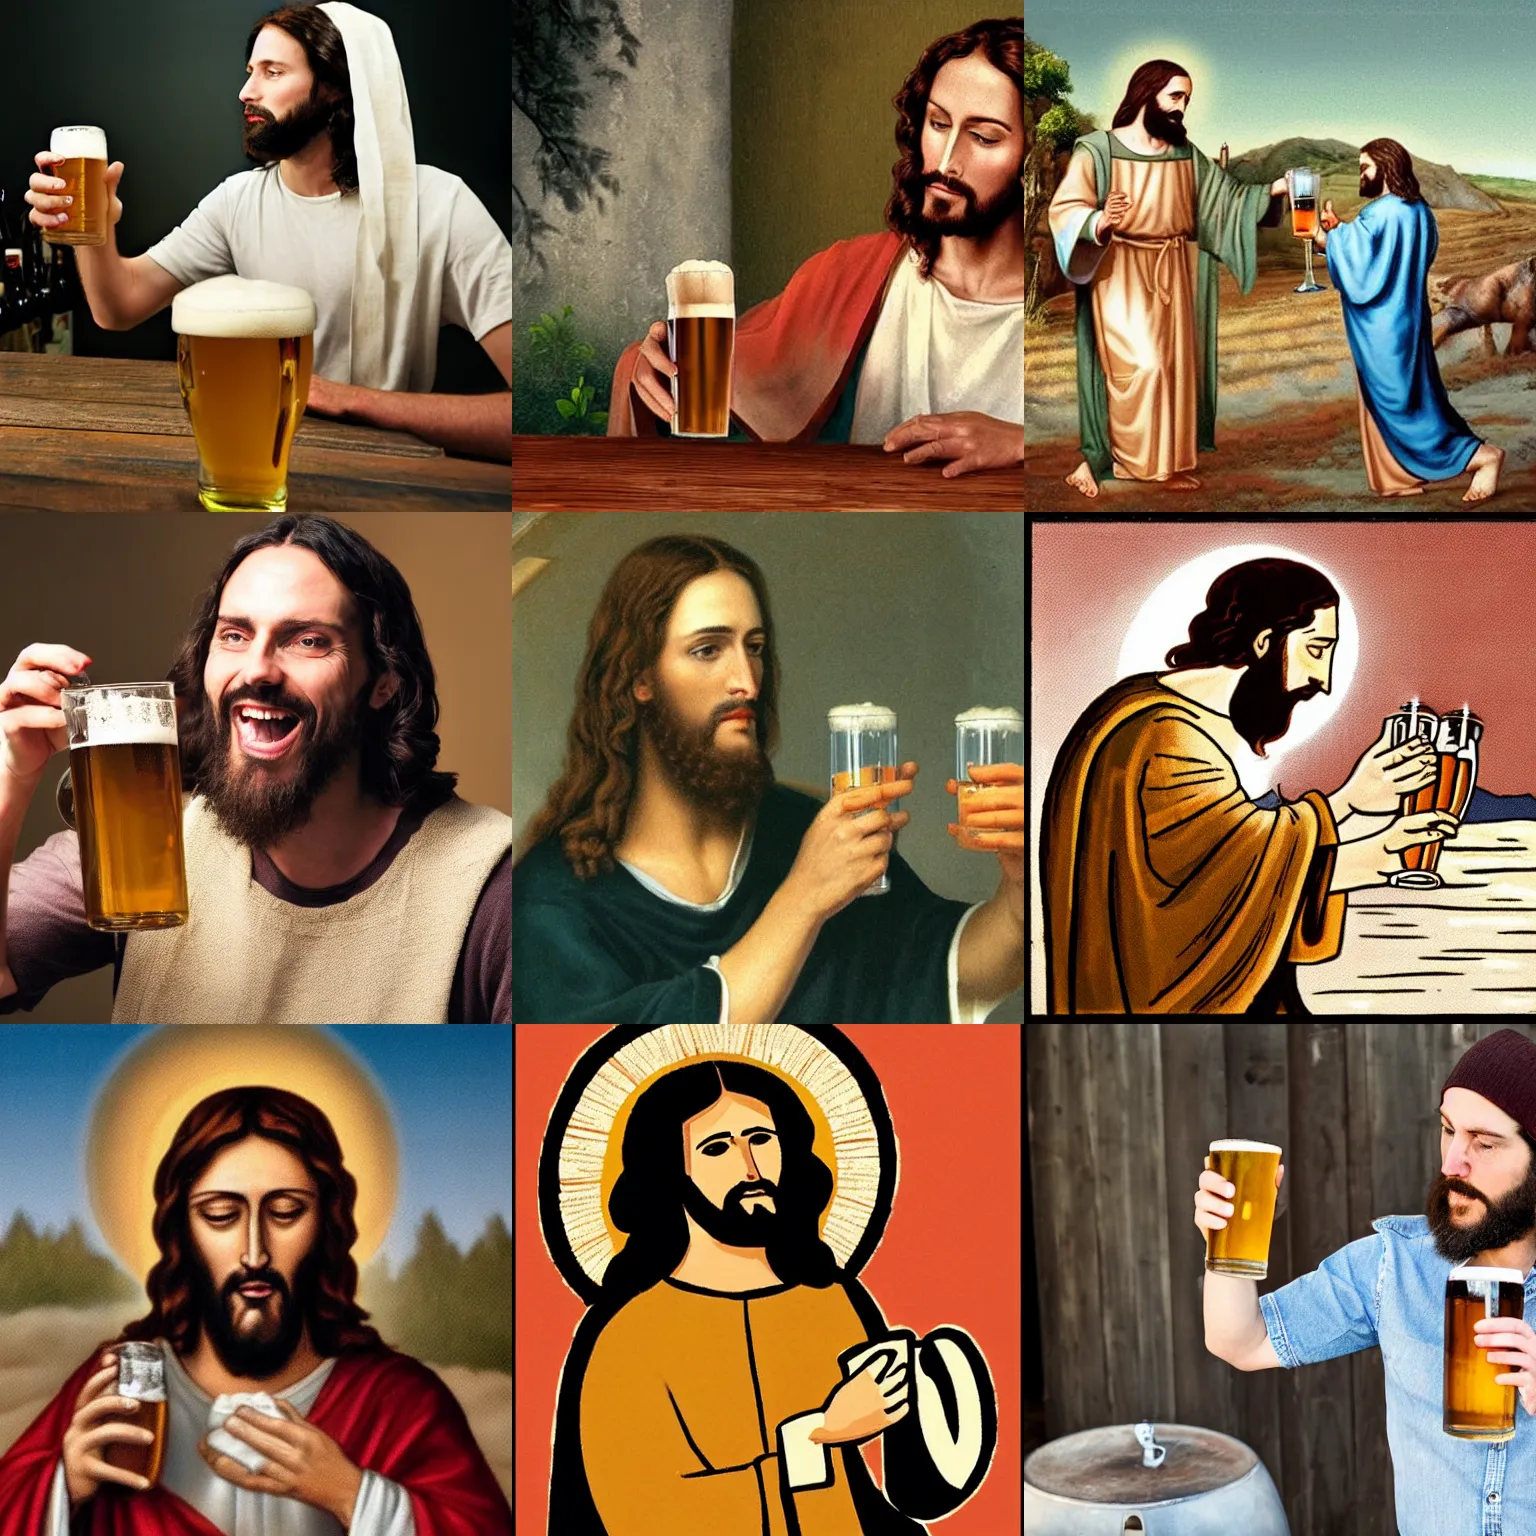 Prompt: jesus drinking beer